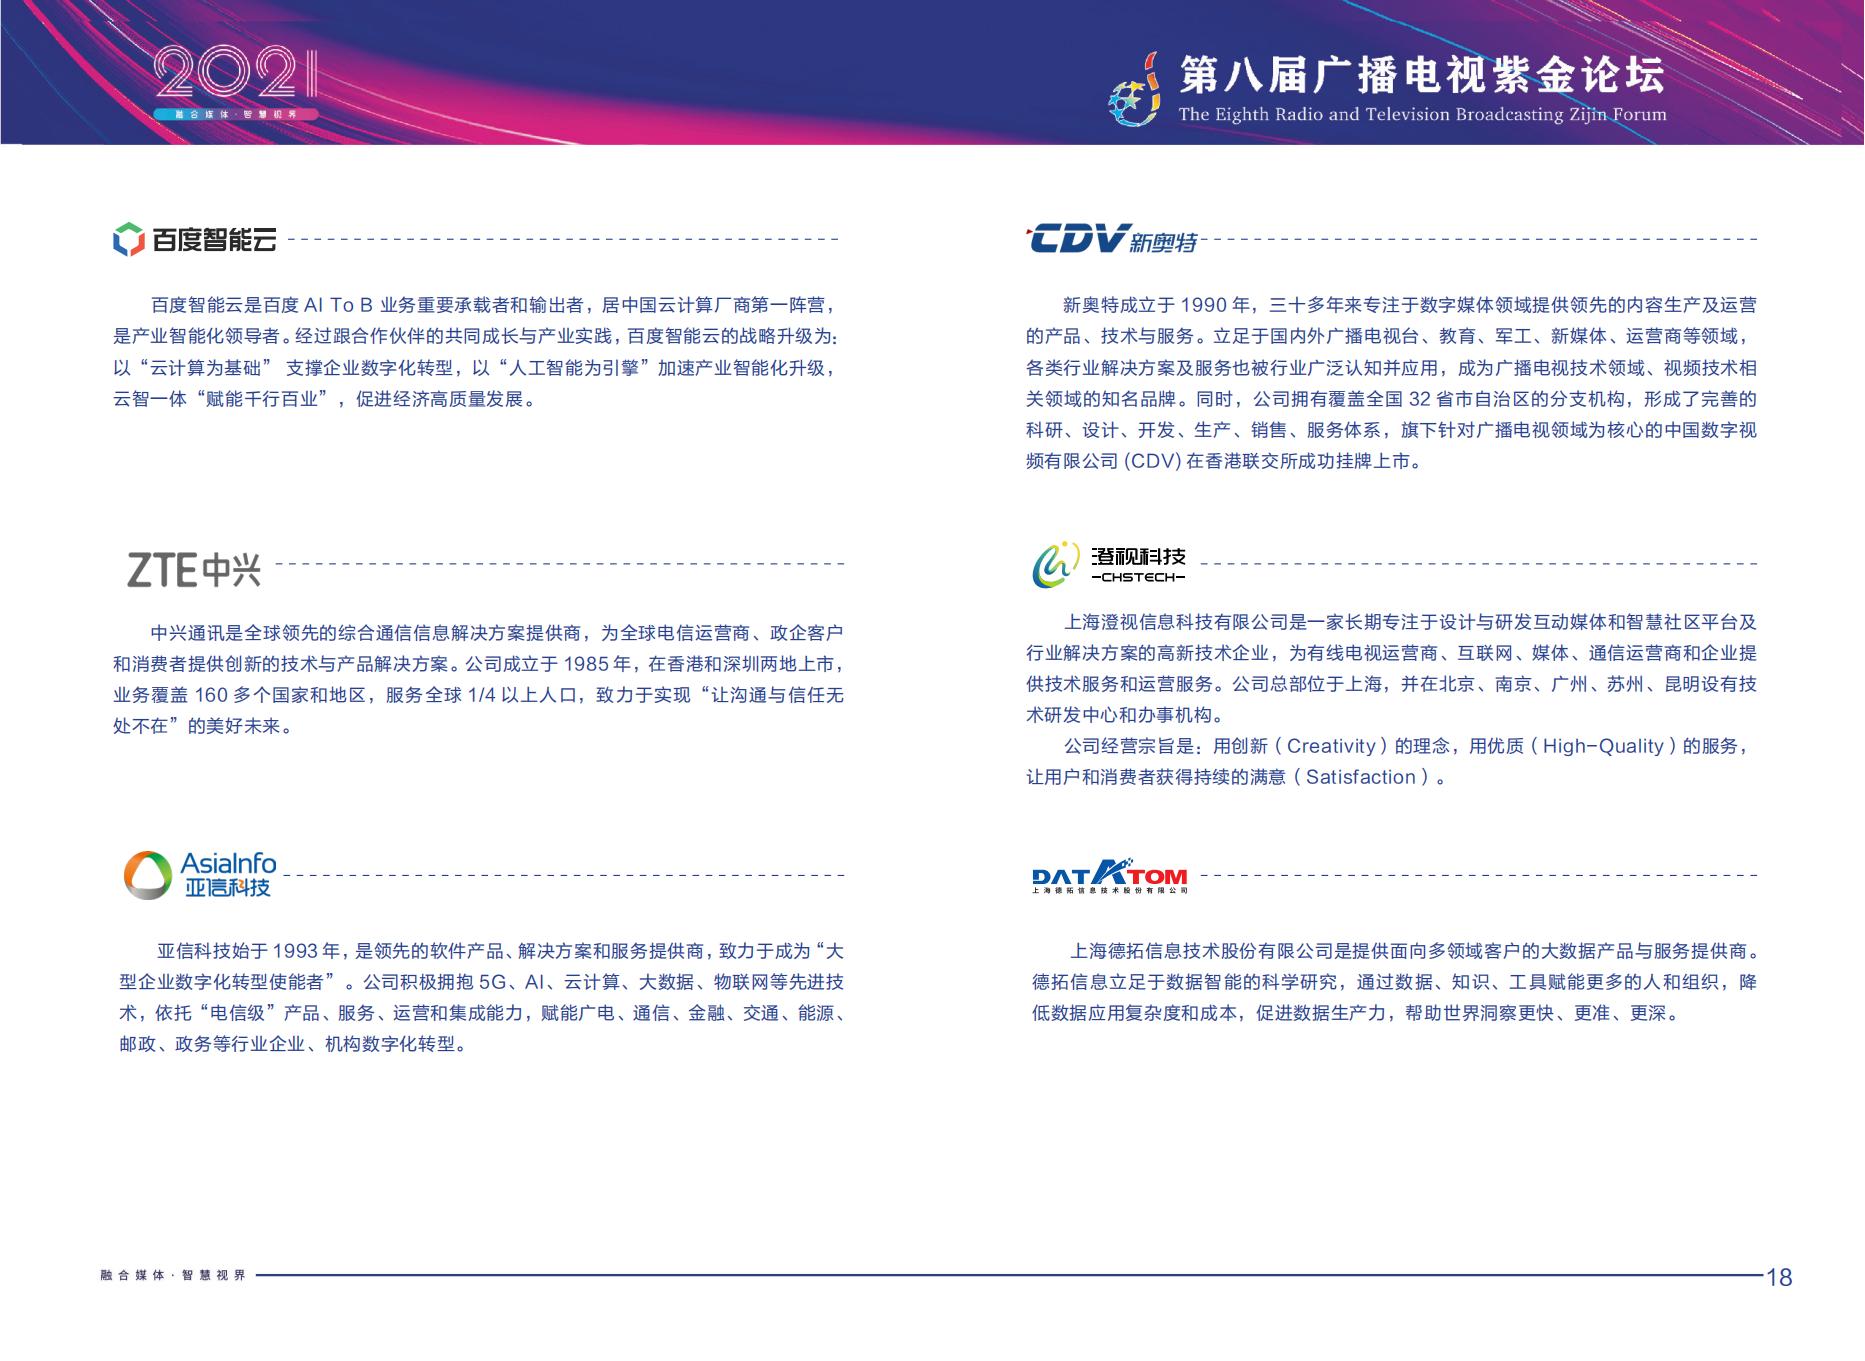 2021年第八届广播电视紫金论坛将在南京召开-DVBCN